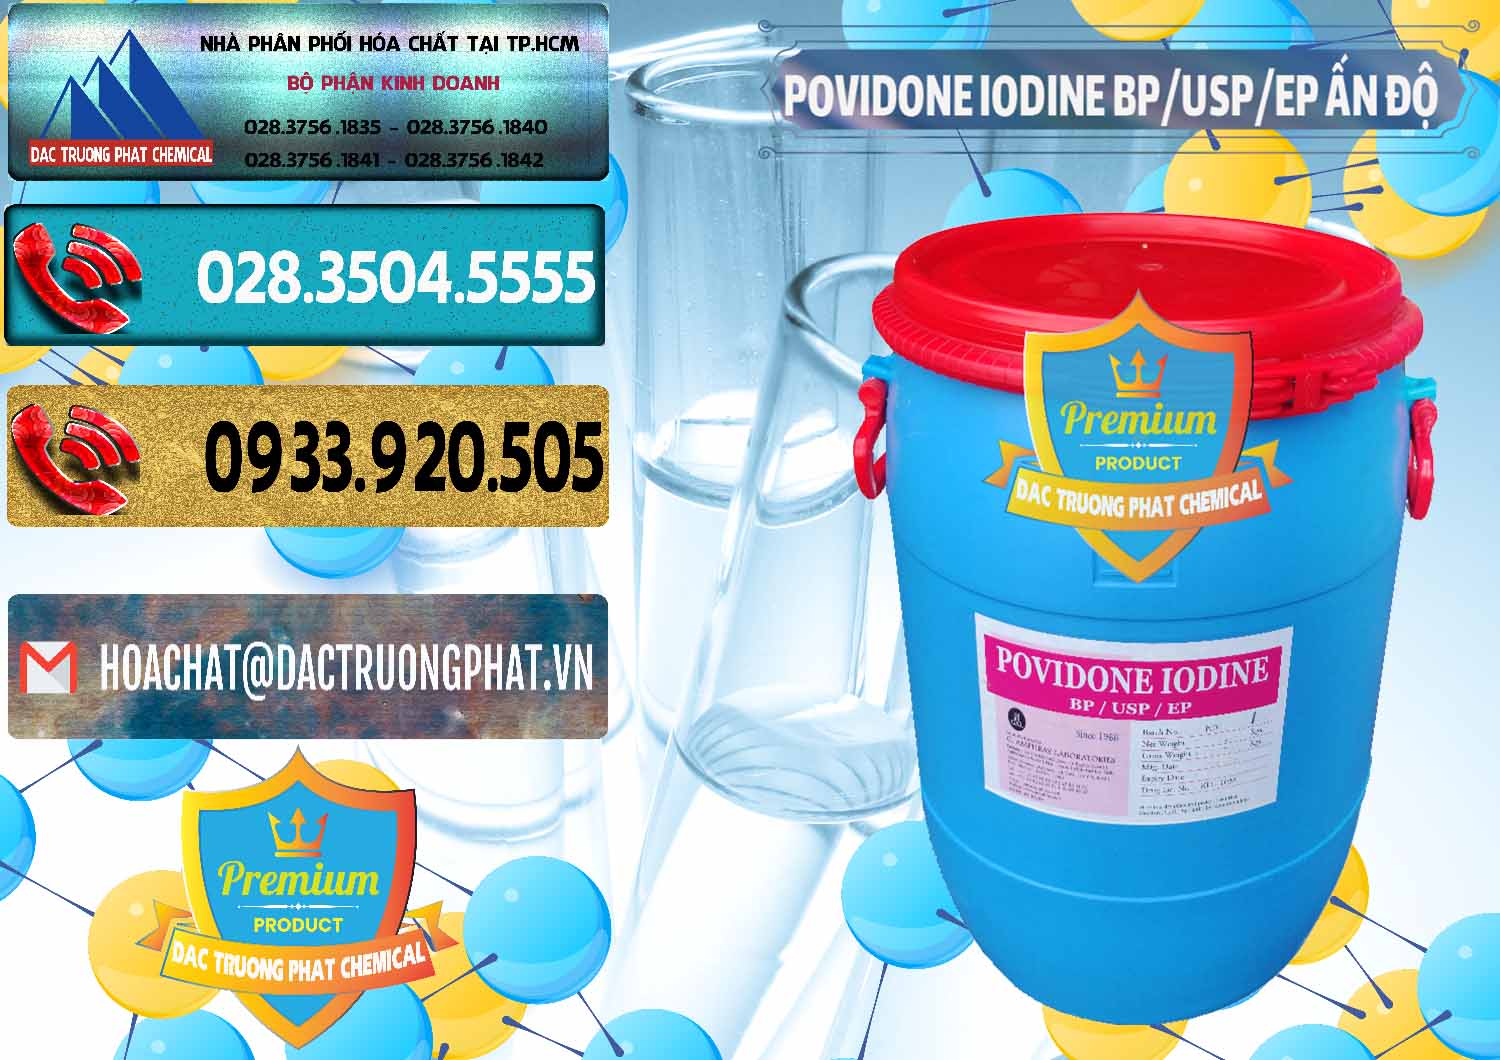 Đơn vị chuyên bán và phân phối Povidone Iodine BP USP EP Ấn Độ India - 0318 - Đơn vị chuyên phân phối & bán hóa chất tại TP.HCM - hoachatdetnhuom.com